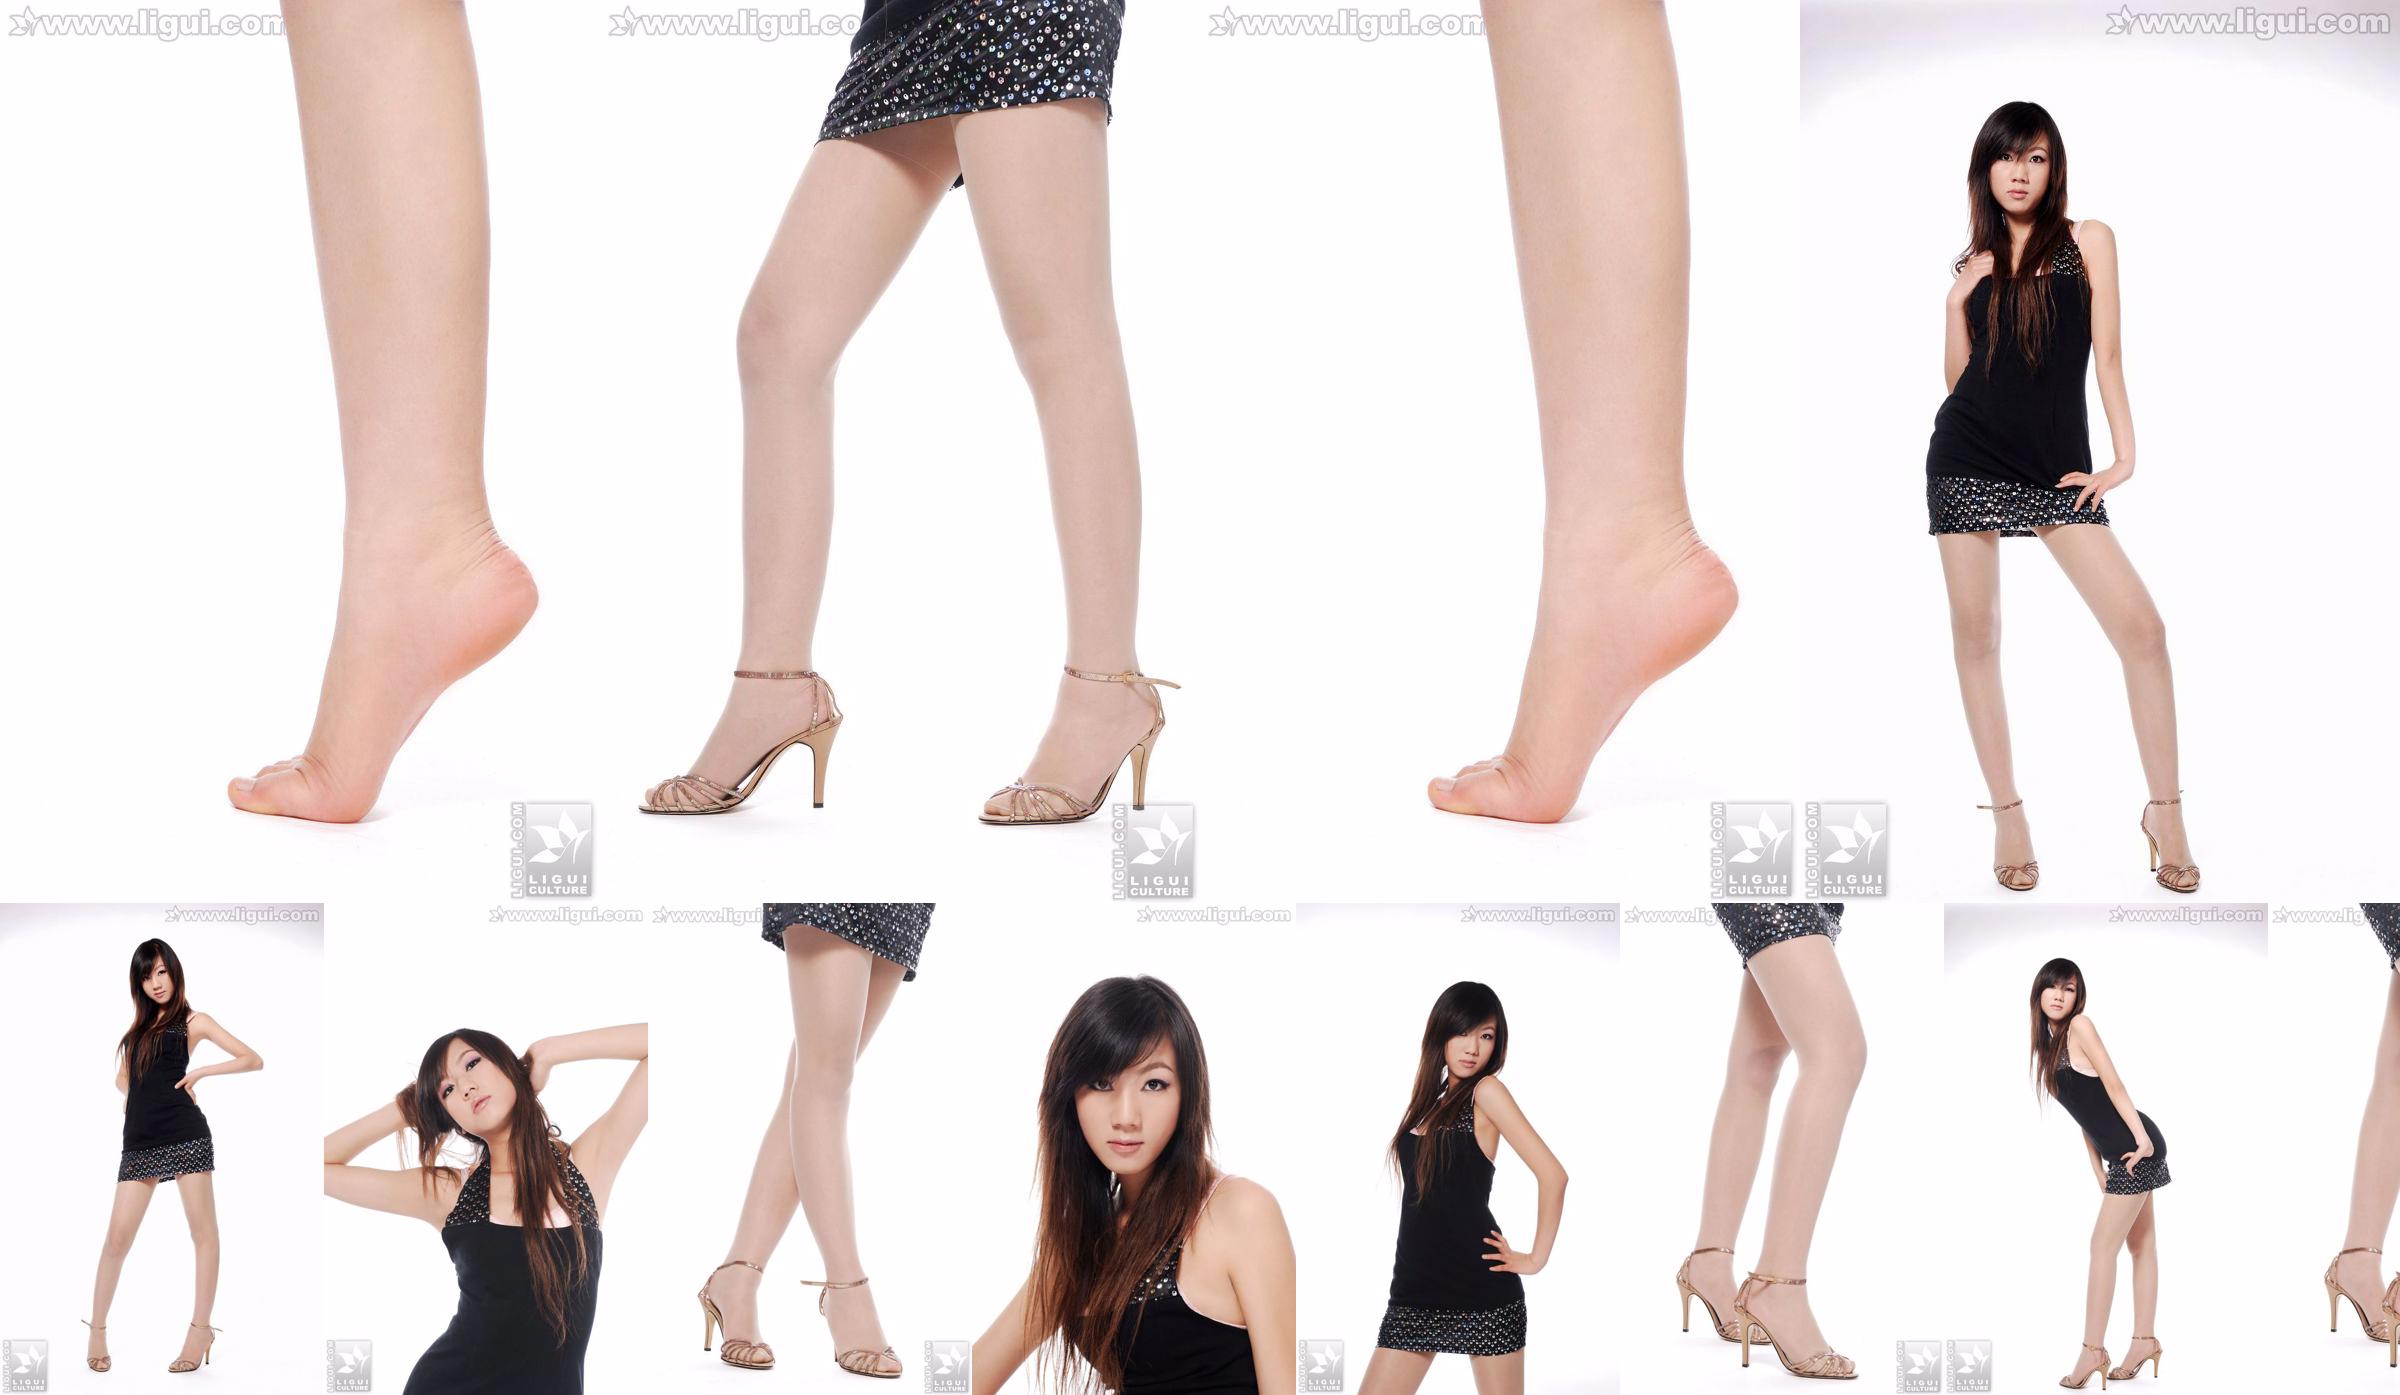 Modell Sheng Chao "Hochhackiger Jadefuß Schöne Neue Show" [Sheng LiGui] Foto von schönen Beinen und Jadefuß No.52efb3 Seite 3